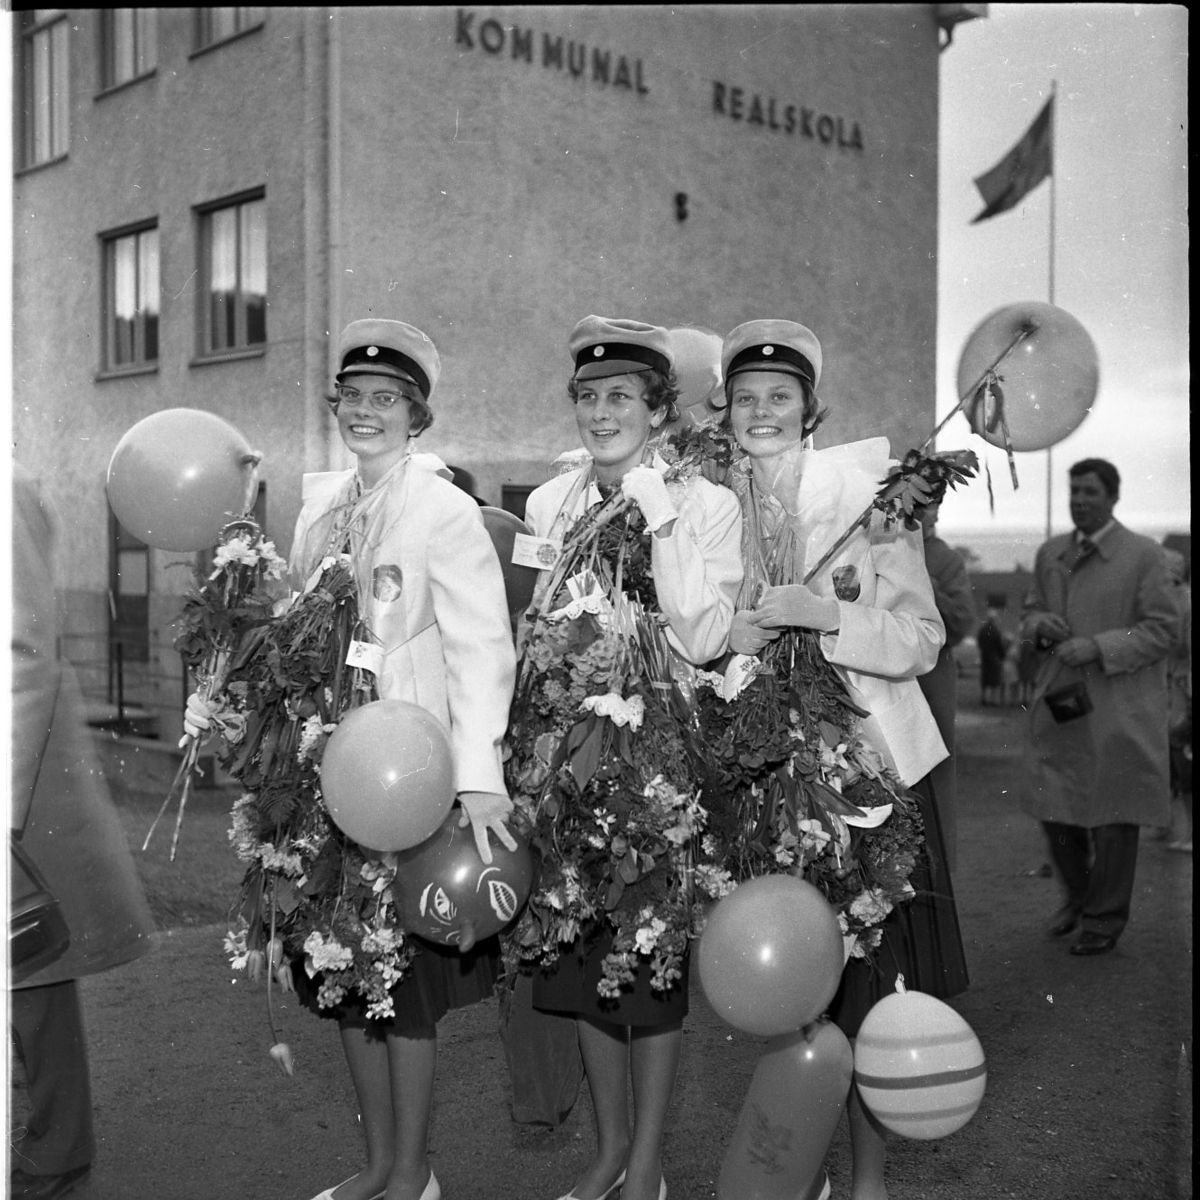 Realexamen 1961. Tre kvinnliga studenter står uppställda för fotografering. De bär realskolemössor och de har buketter och ballonger runt halsarna. I bakgrunden syns skolbyggnaden, på fasaden står det kommunal realskola.